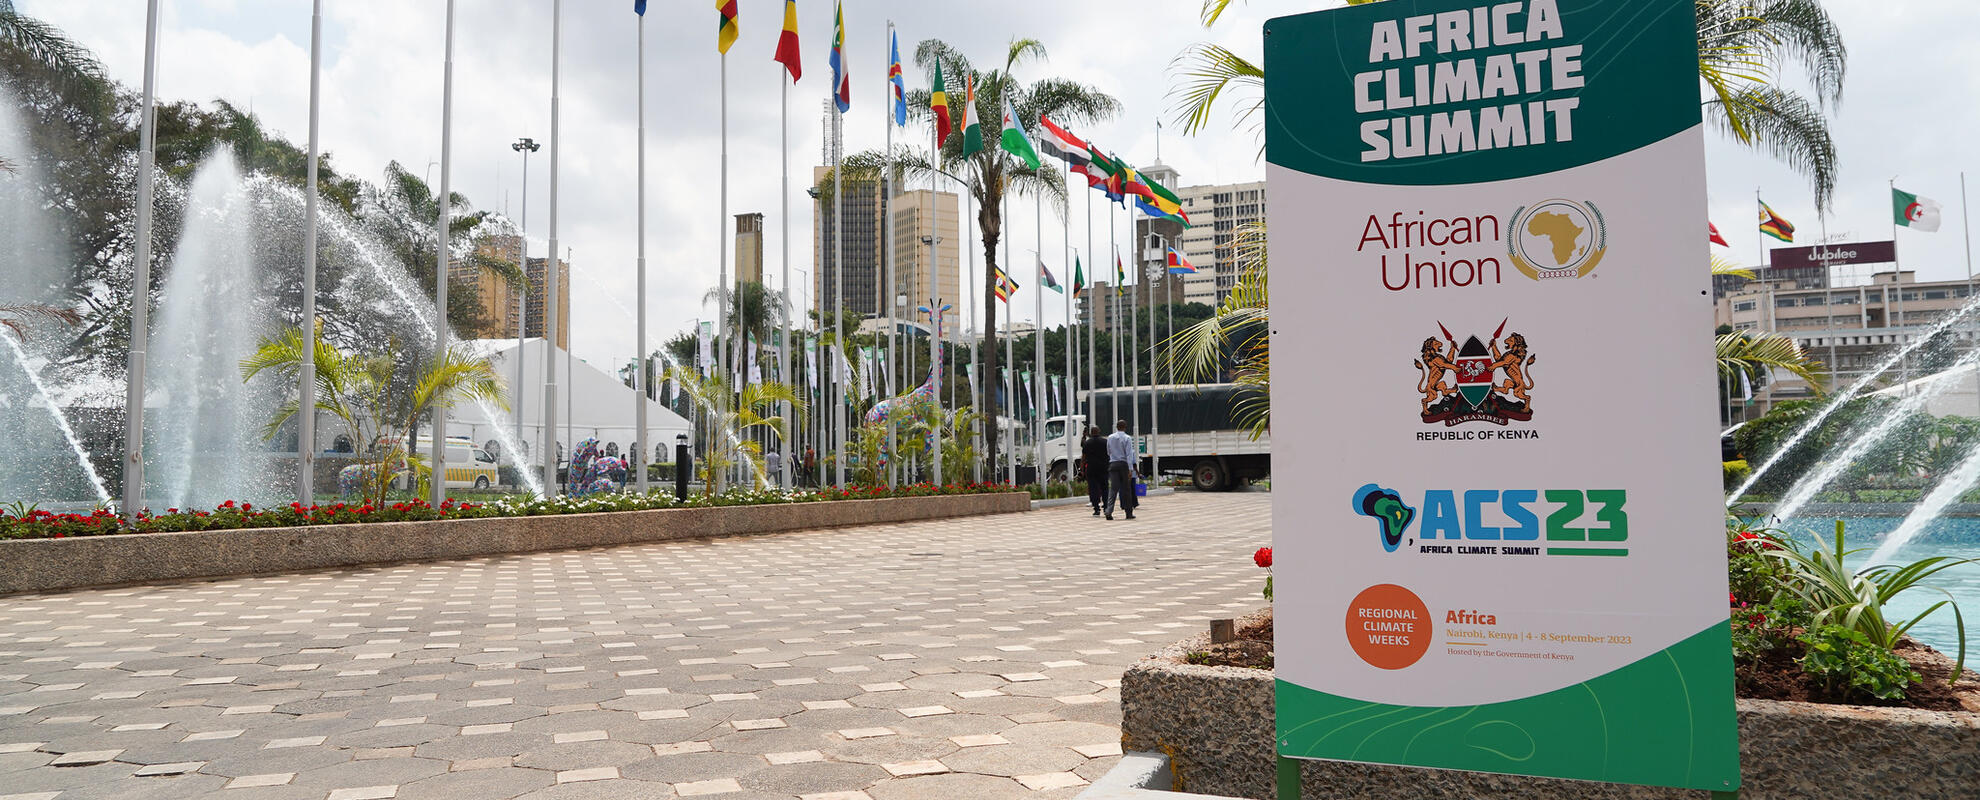 Around the venue at Africa Climate Summit. Photo credit: UNFCCC/Lucia Vasquez-2